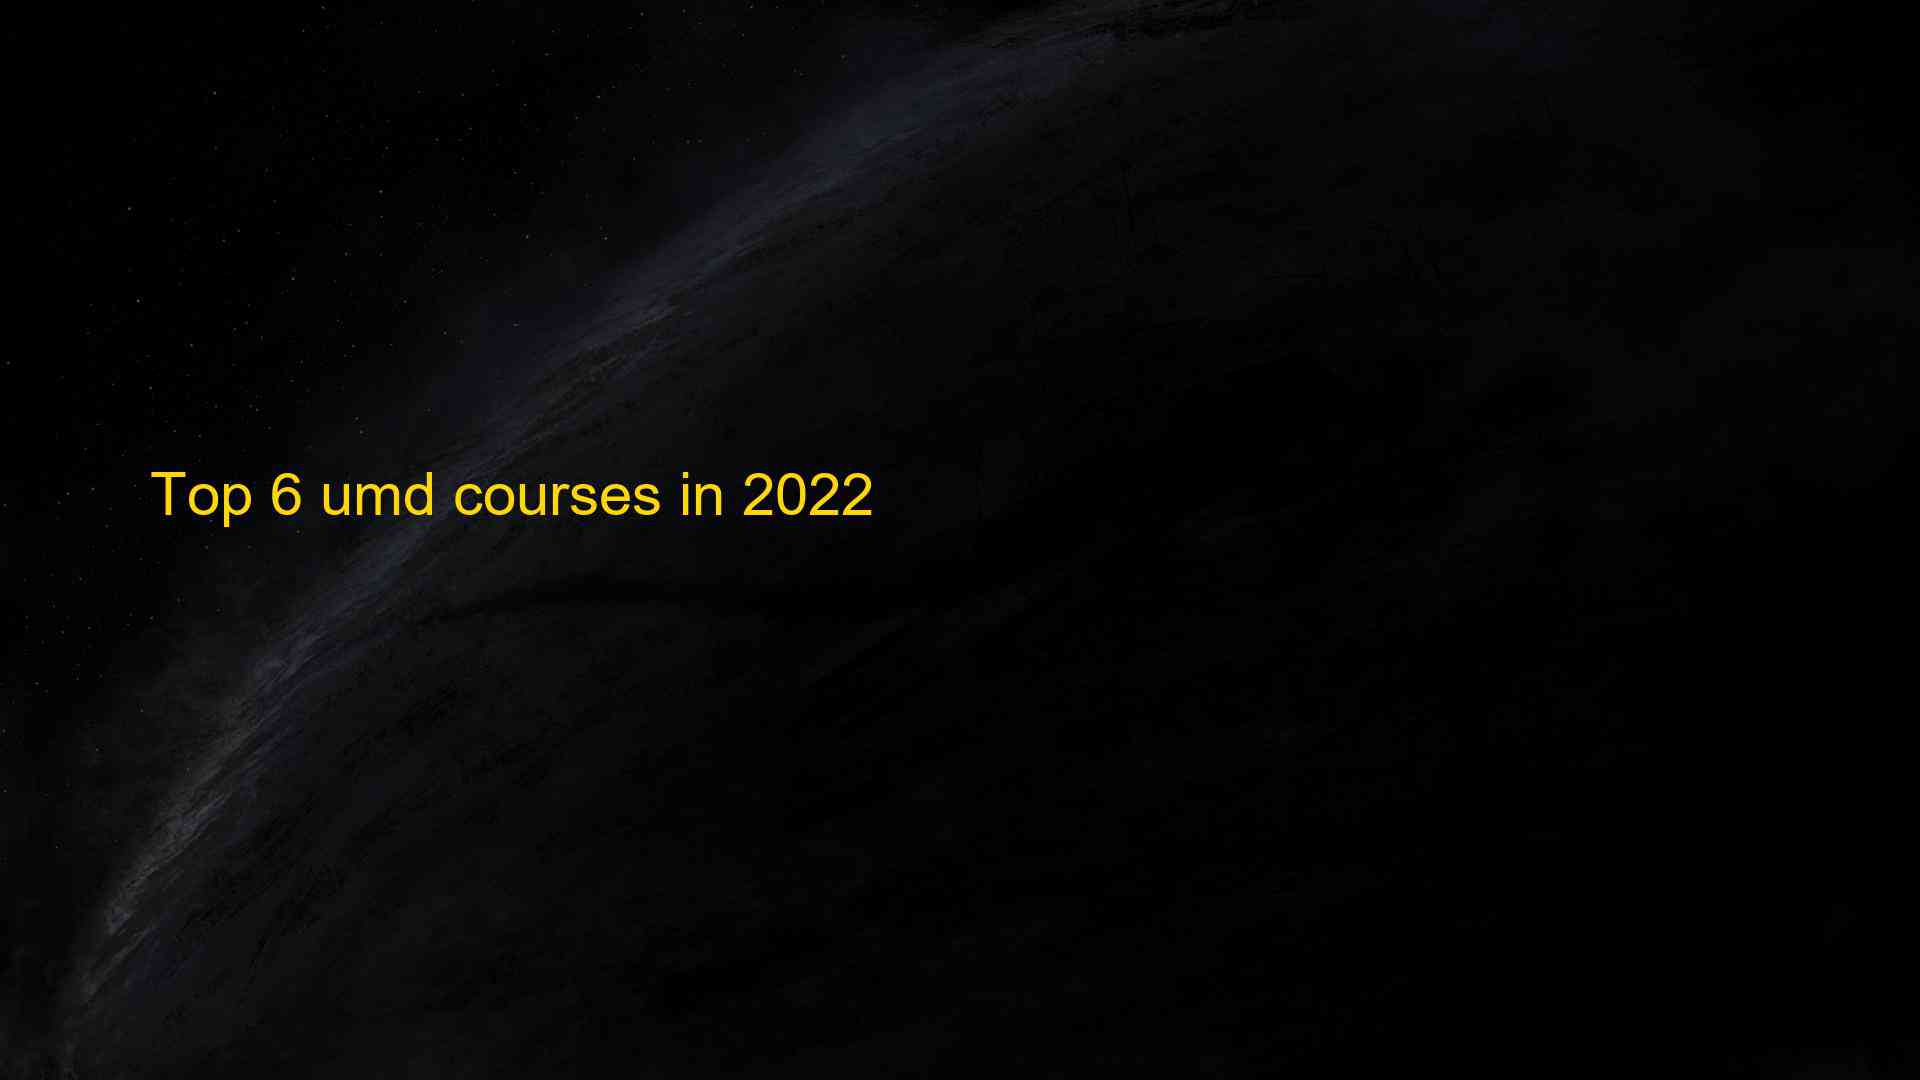 Top 6 umd courses in 2022 1660825888